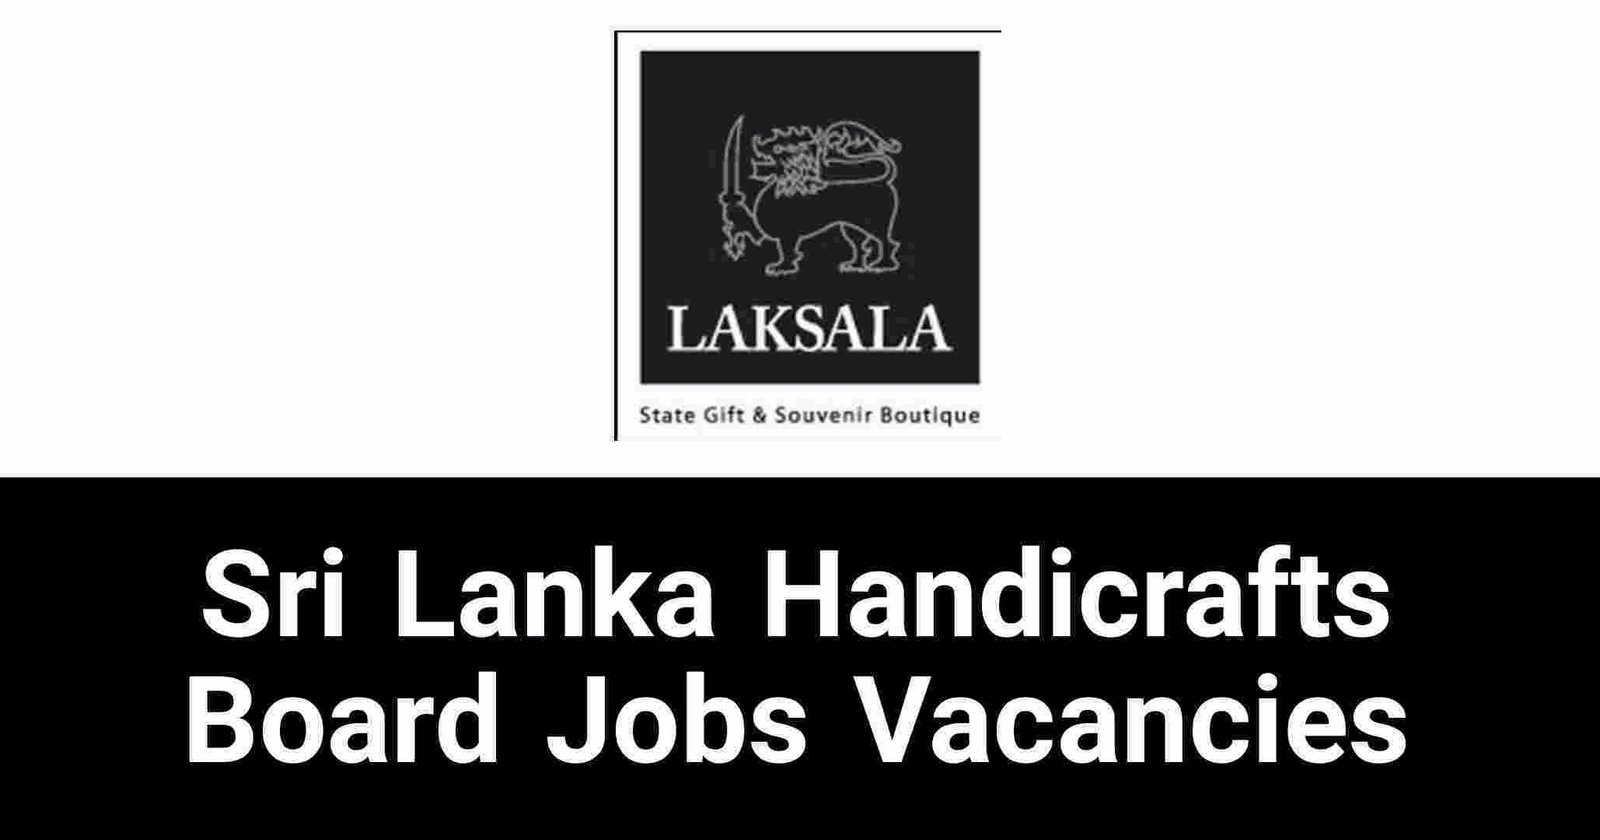 Sri Lanka Handicrafts Board Jobs Vacancies